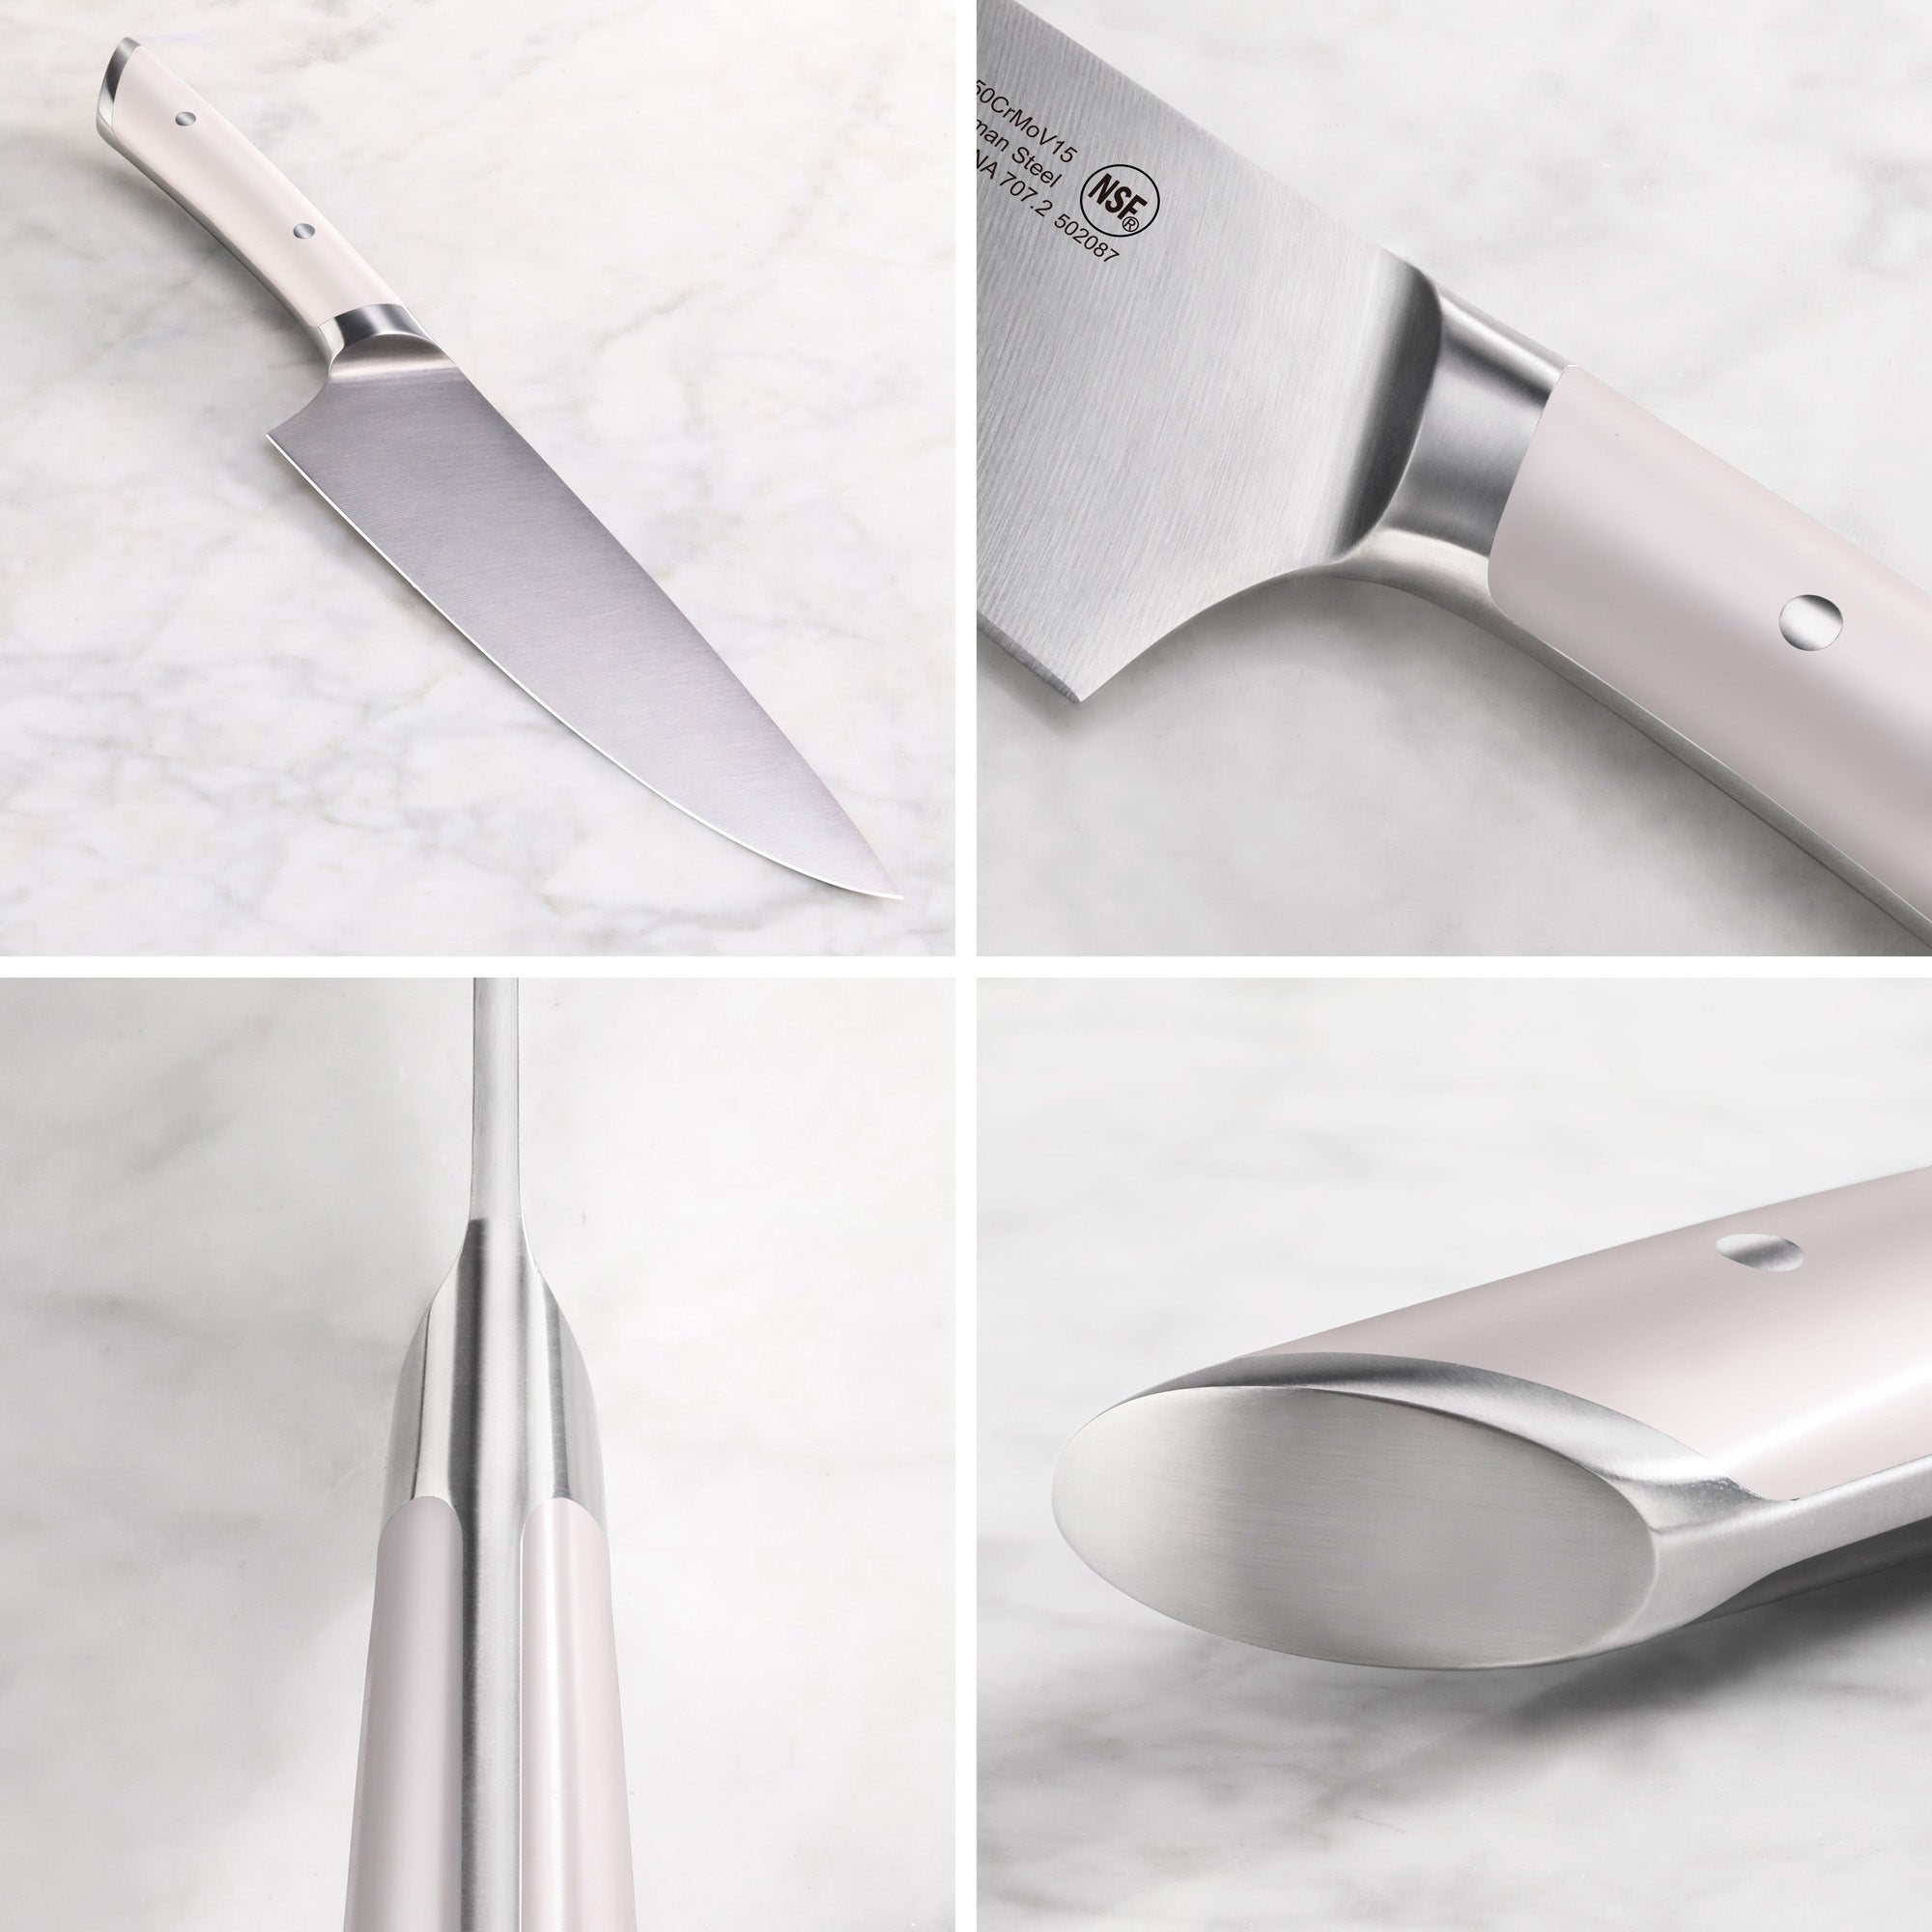 Cangshan HELENA Series German Steel 23-piece Knife Block Set, White